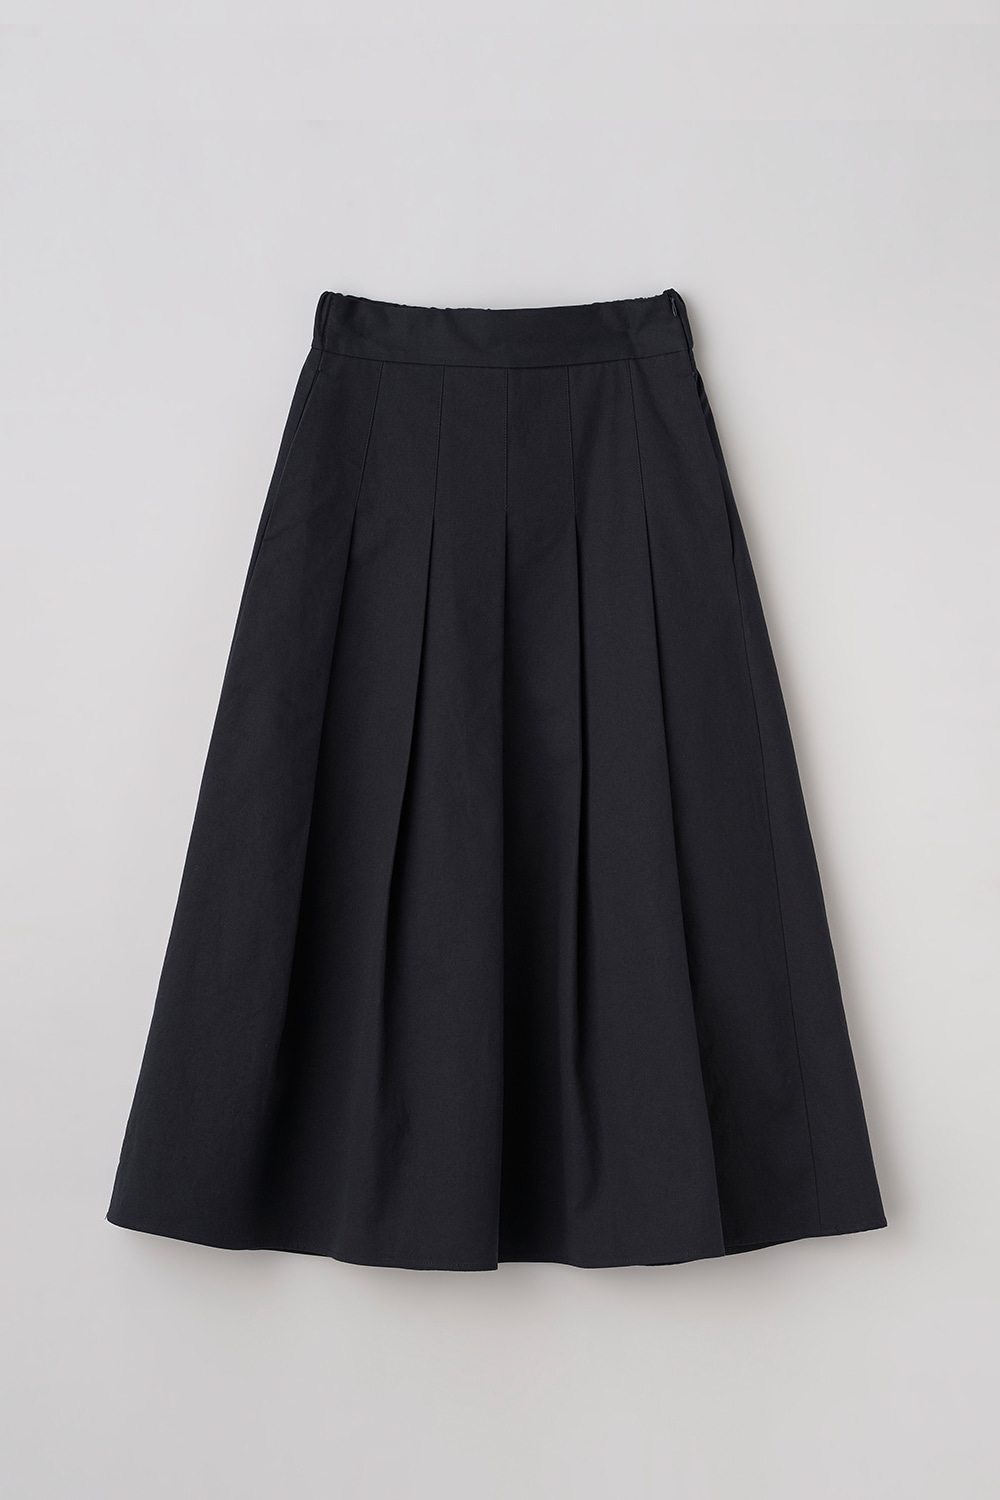 Layered Pleats Skirt_NV